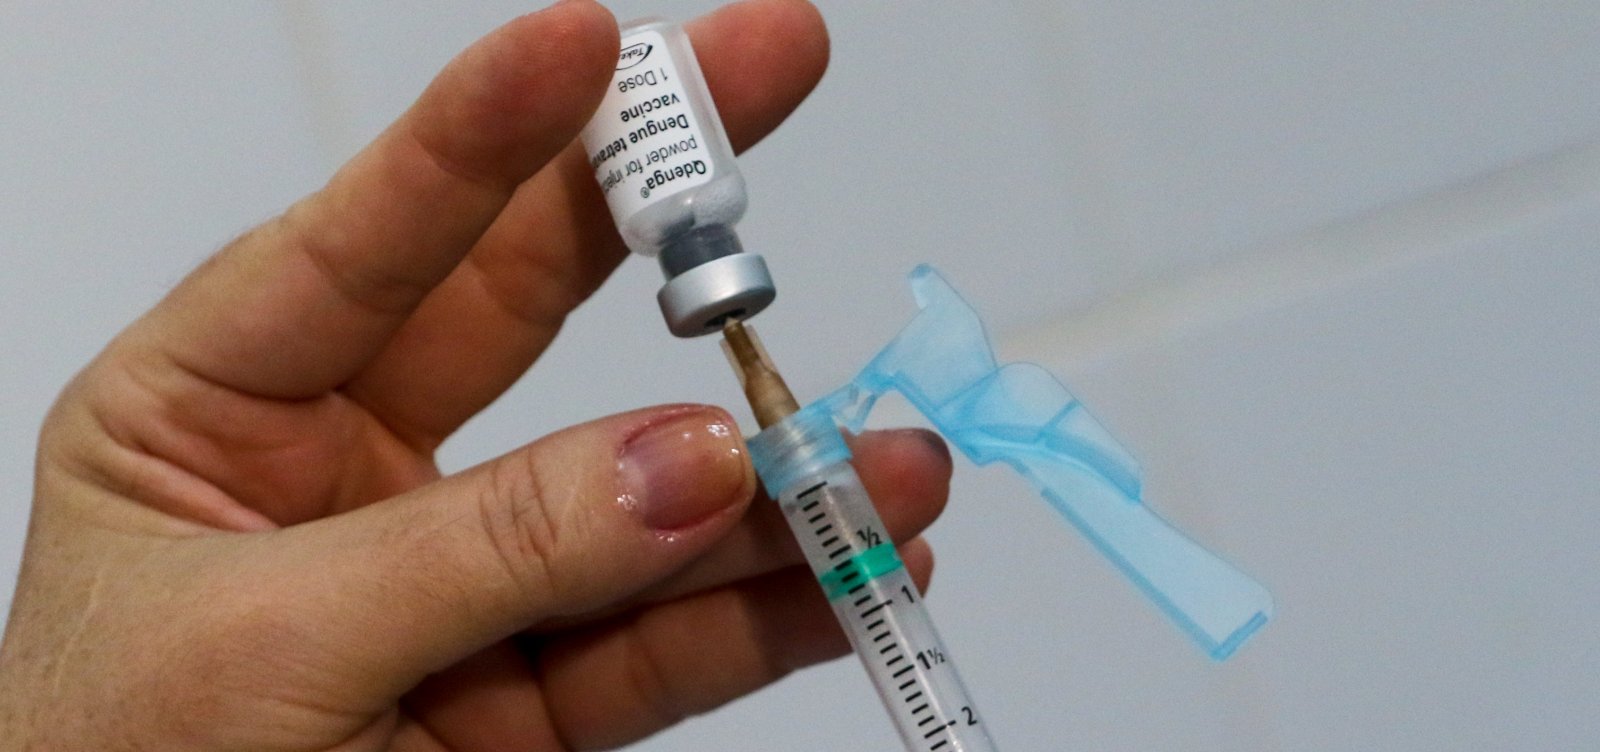 29 municípios são incluídos em lista para receber vacinas da dengue